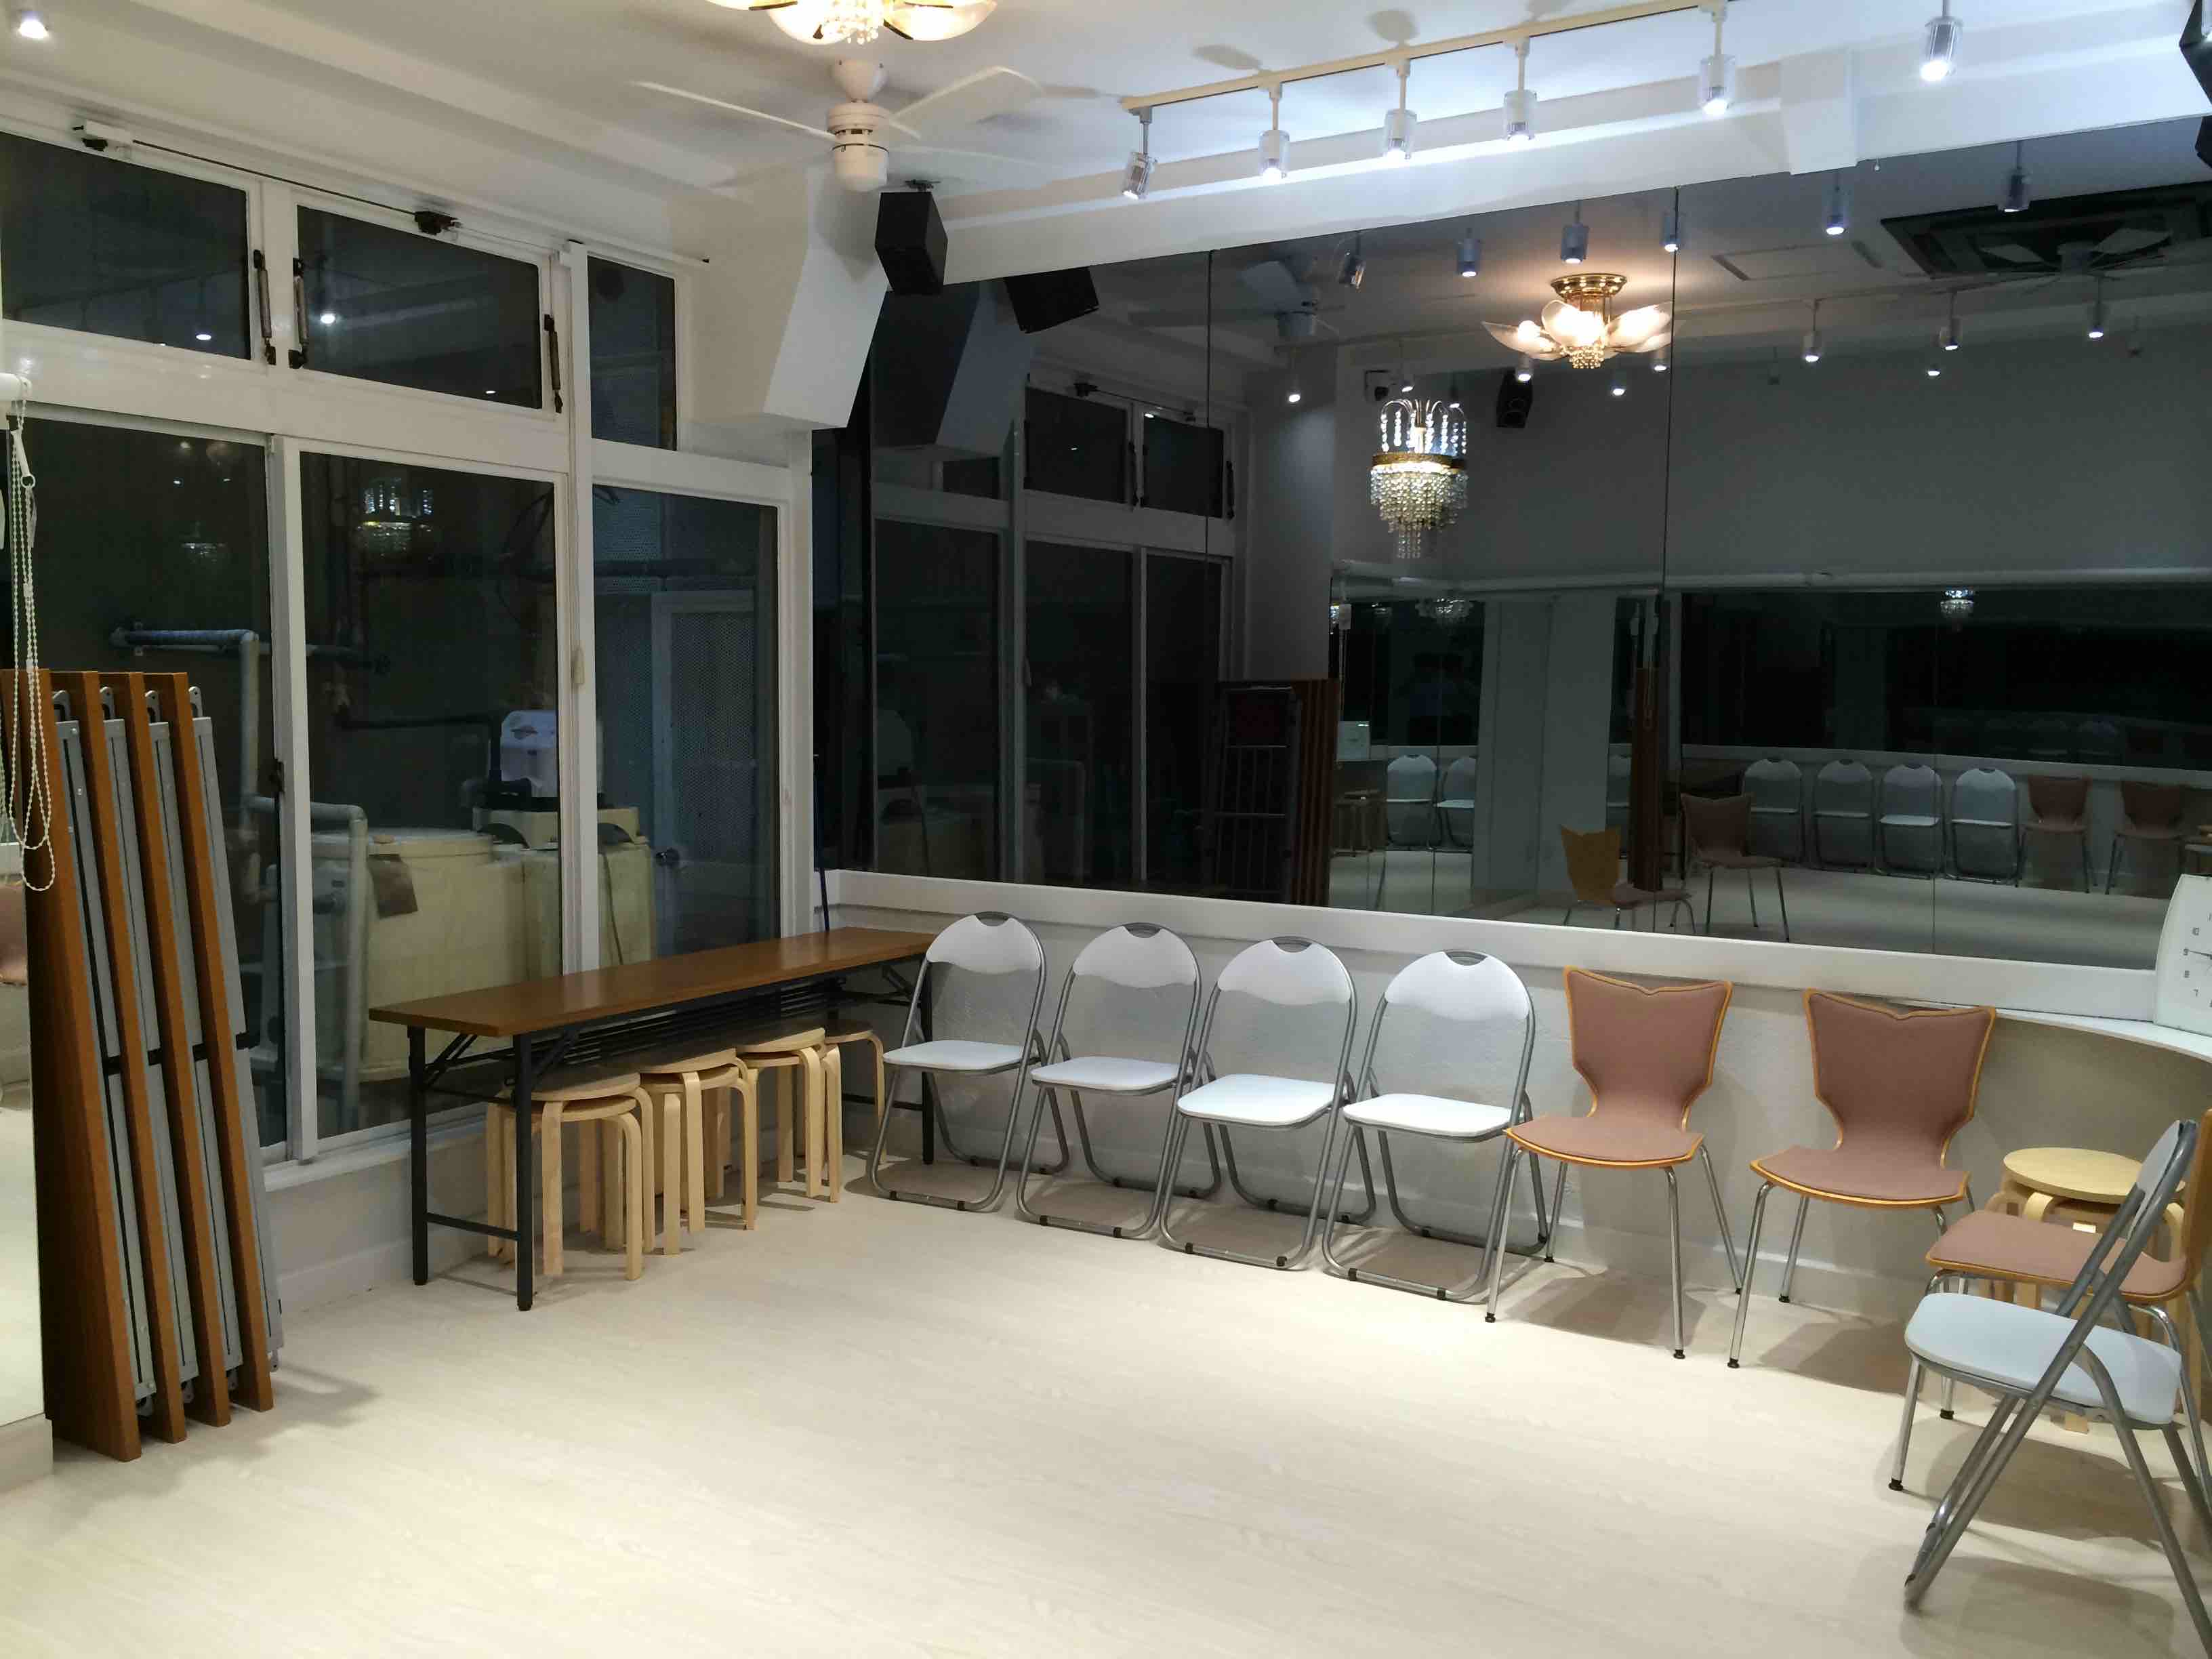 【新宿】白を基調としたモダンなキッチン付き多目的スタジオ「赤レンガサロンスタジオ」